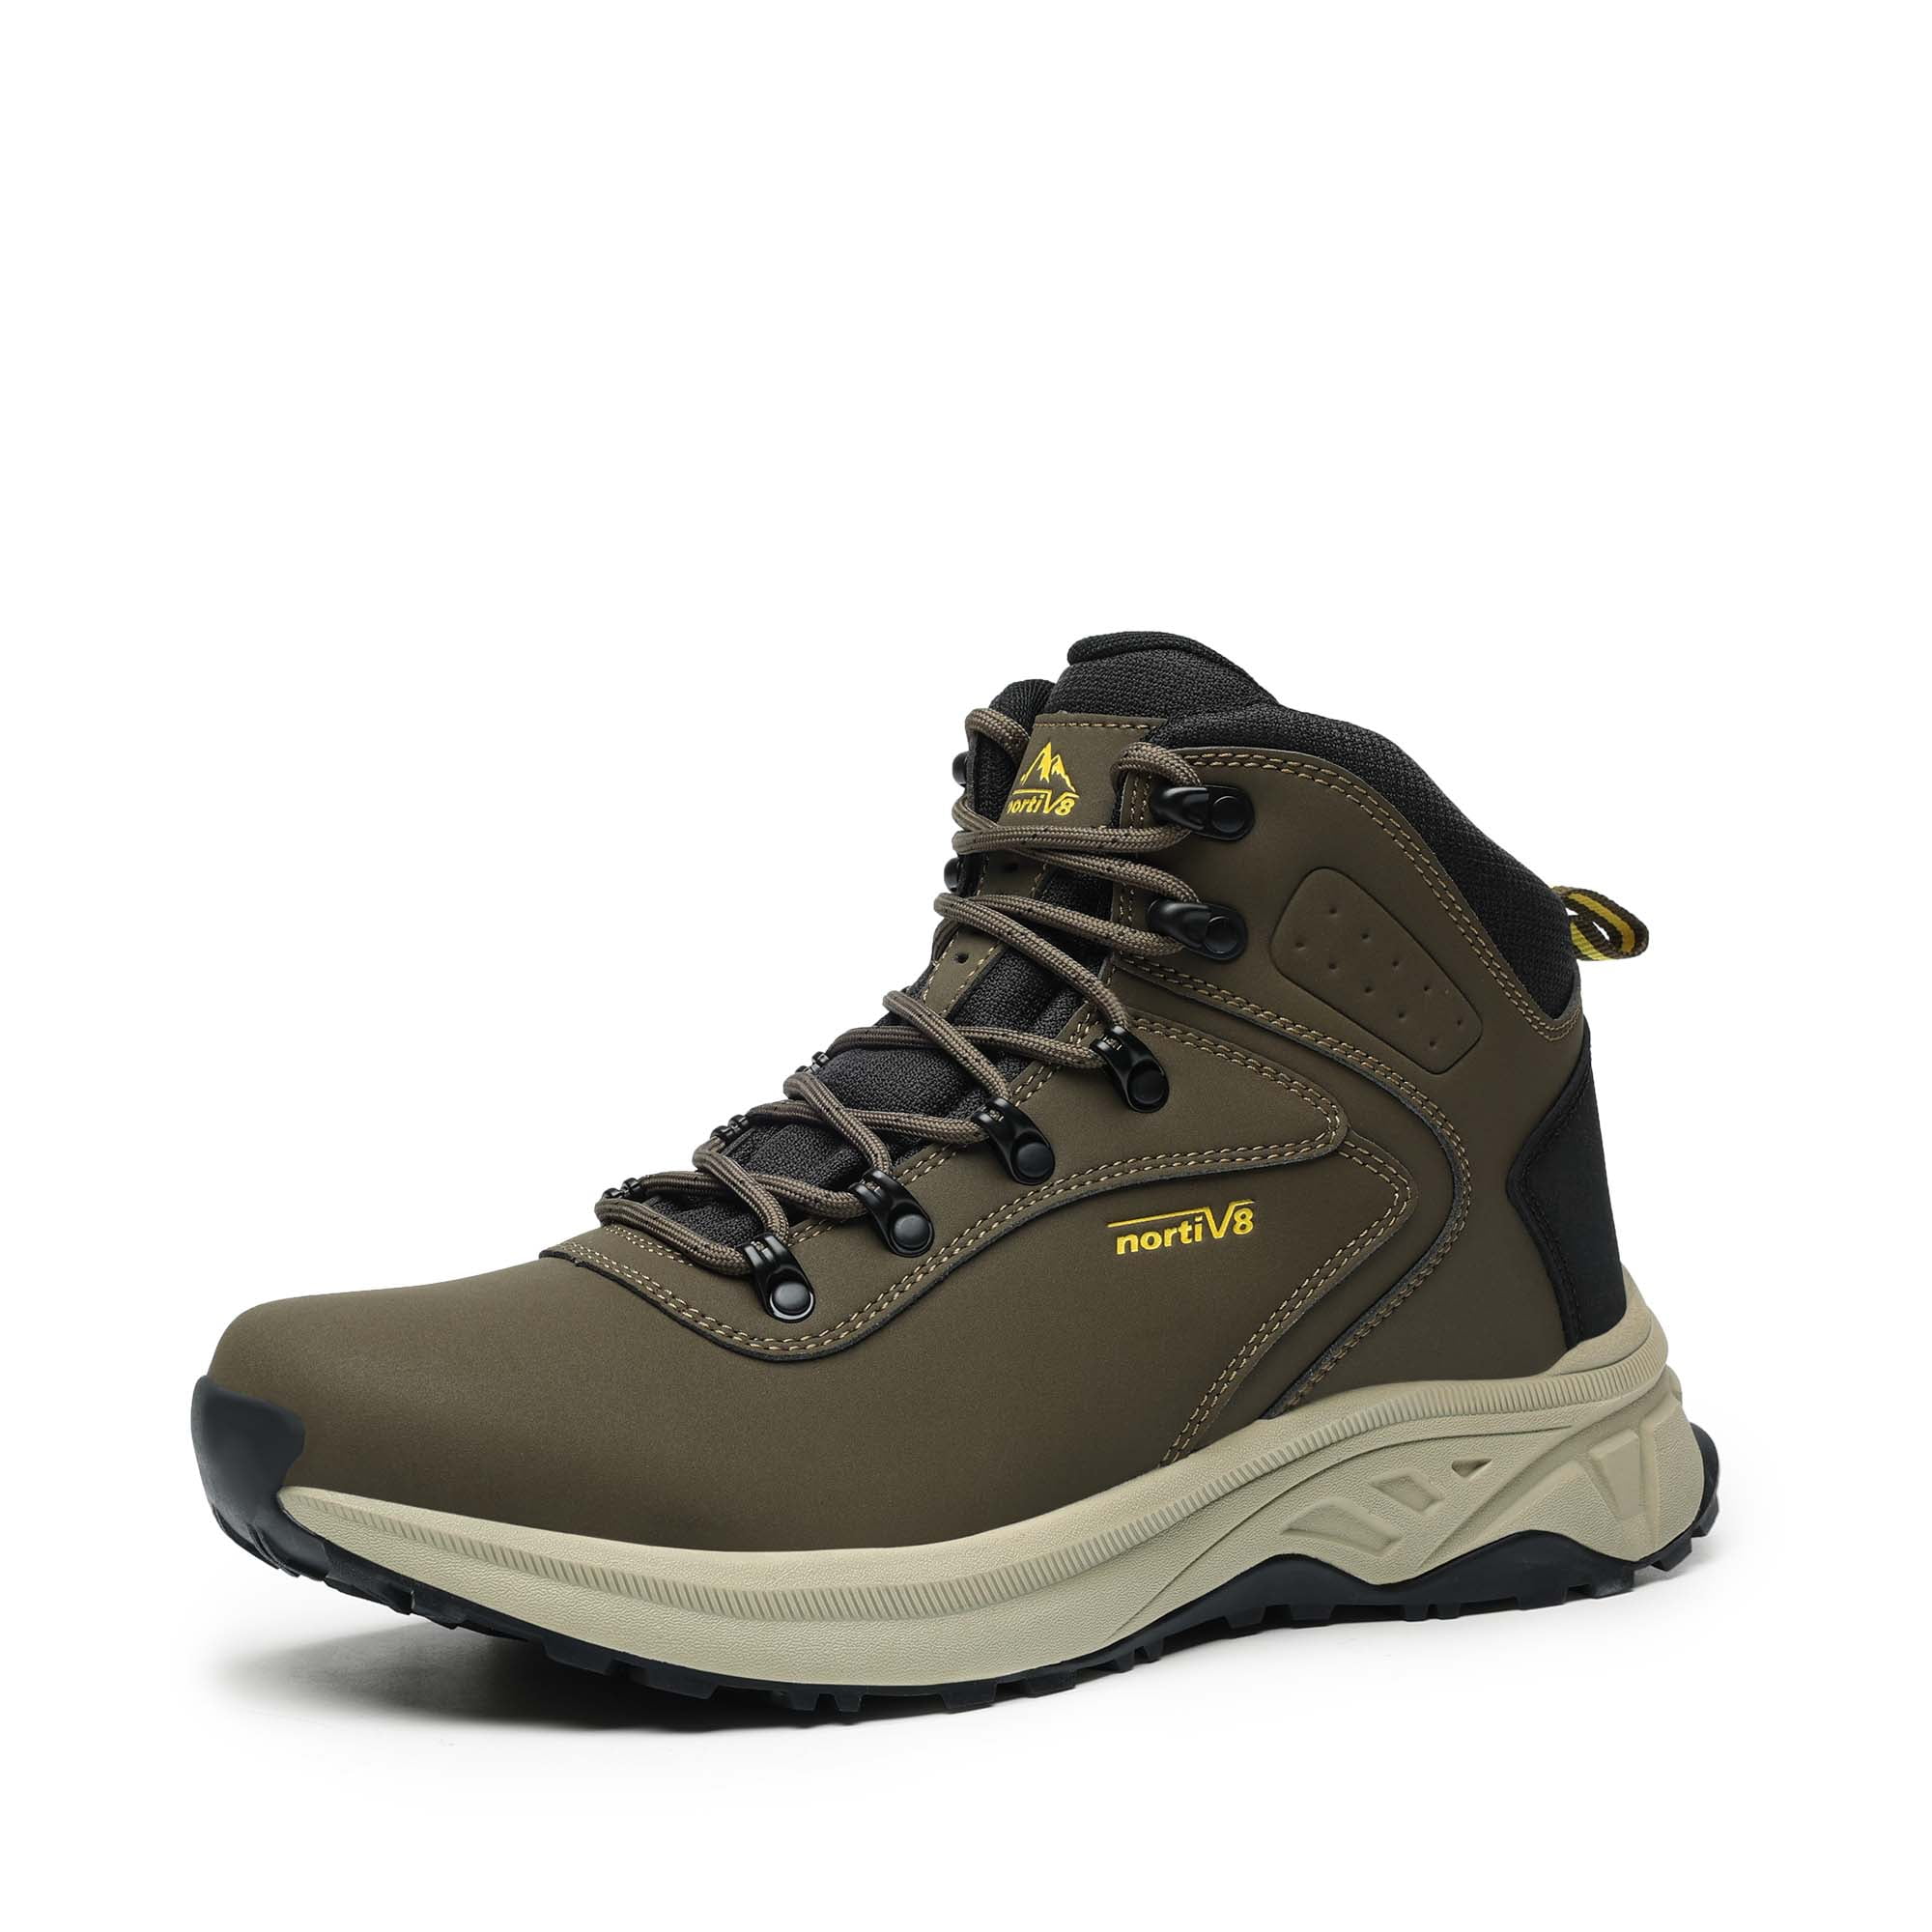 NORTIV 8 Men's Waterproof Hiking Boots Outdoor Shoes - Walmart.com